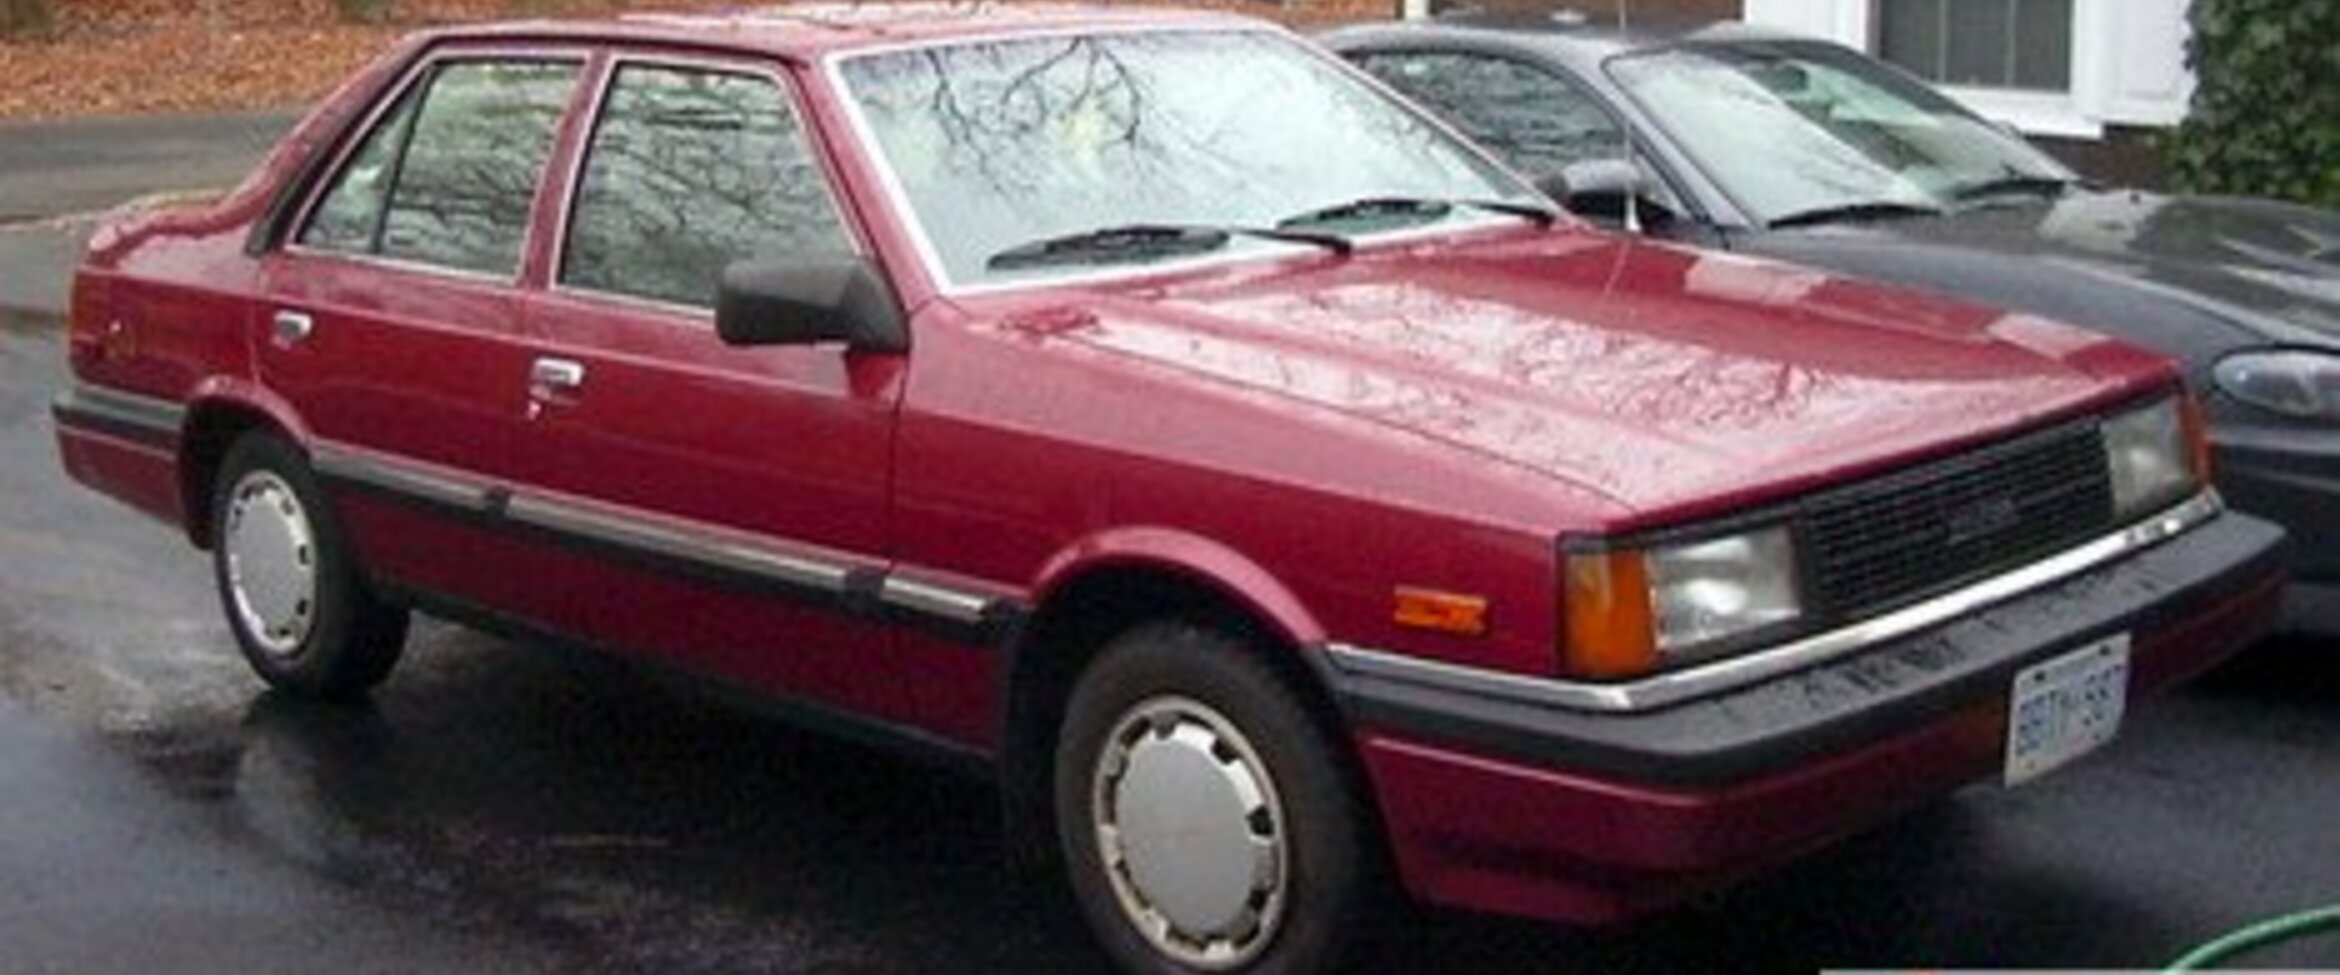 Hyundai Stellar 1.6 (75 Hp) 1983, 1984, 1985, 1986, 1987, 1988, 1989, 1990, 1991, 1992, 1993 